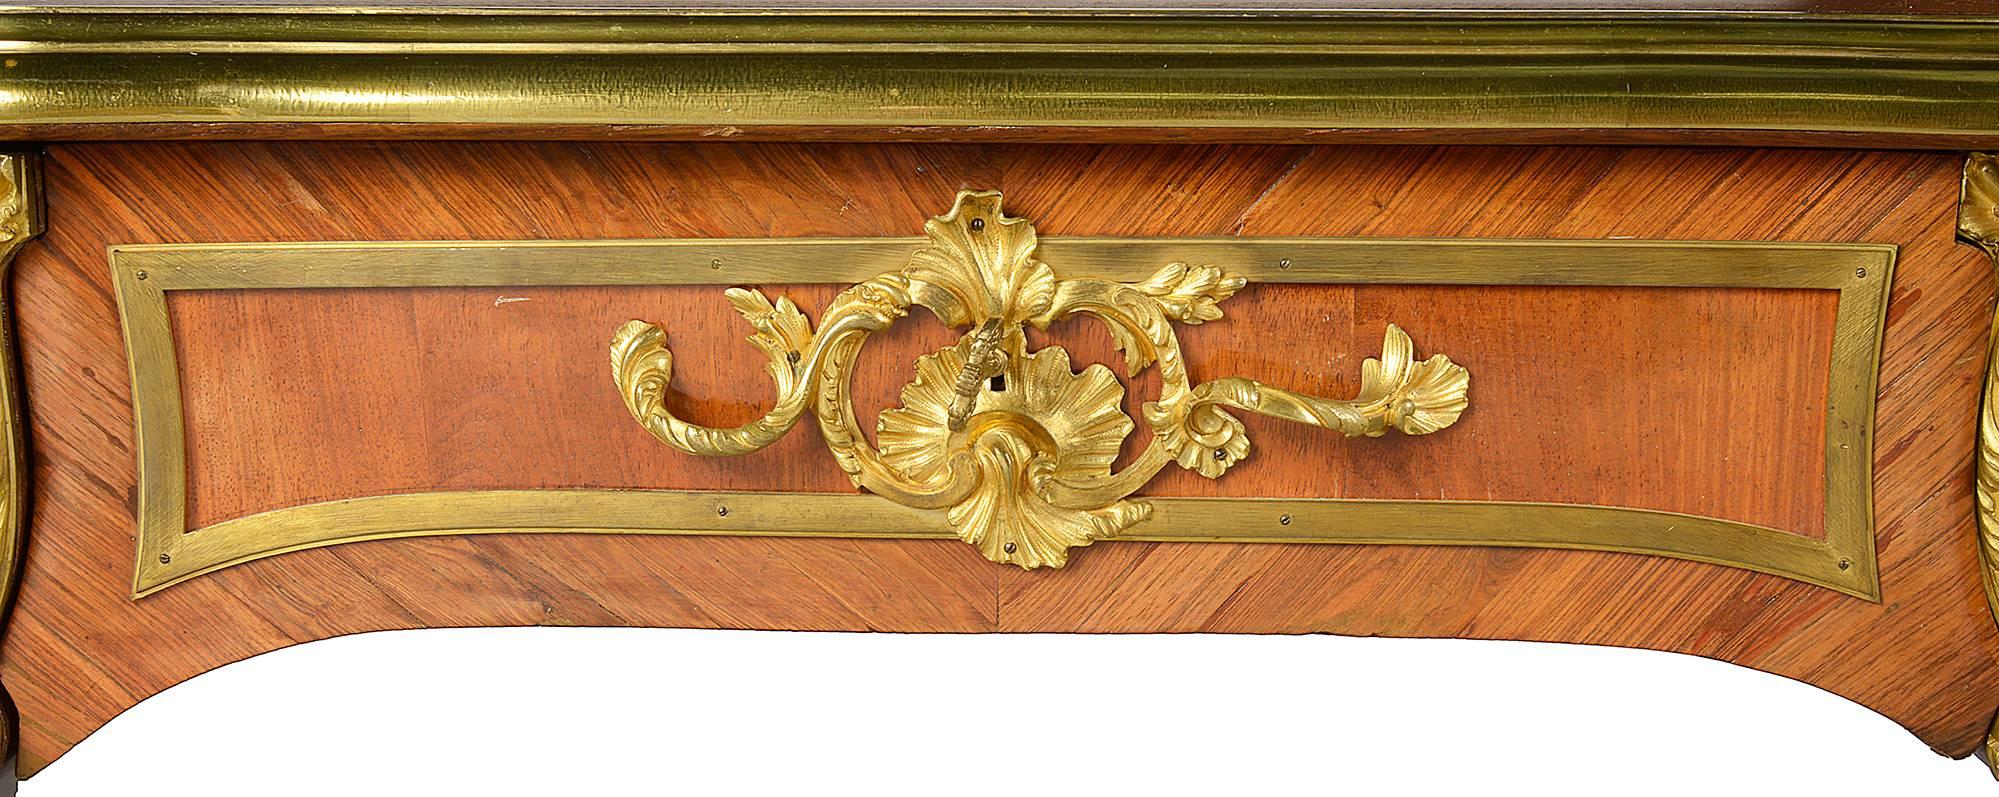 Un très bon bureau plat de style Louis XV du 19ème siècle, avec un dessus en cuir inséré, des montures en bronze doré, trois tiroirs en frise d'un côté, des tiroirs factices à l'arrière, reposant sur des pieds cabriole, chacun avec de merveilleuses